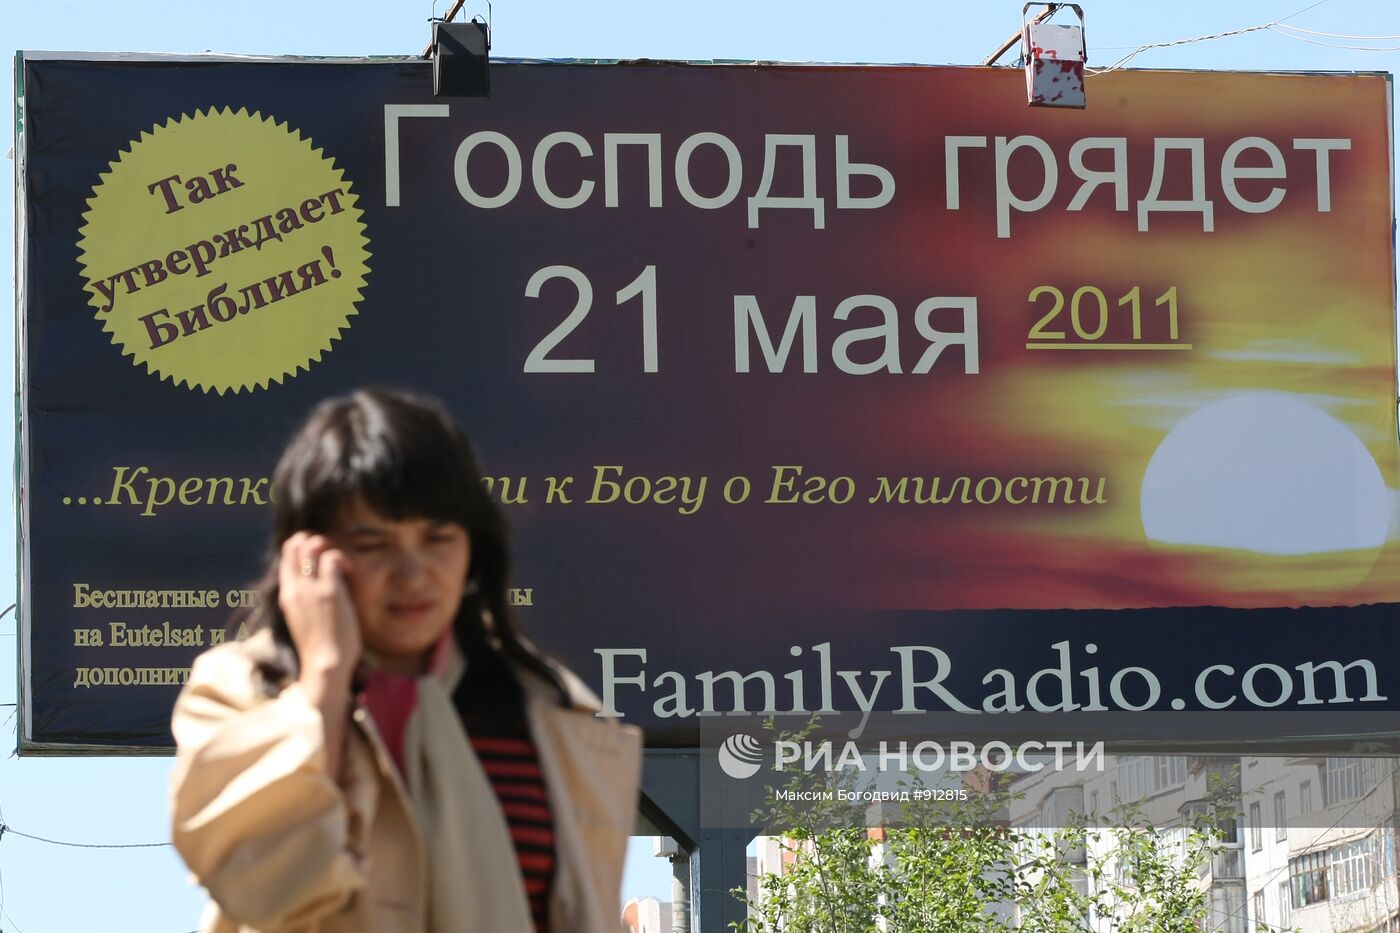 Рекламные щиты о конце света появились в российских городах